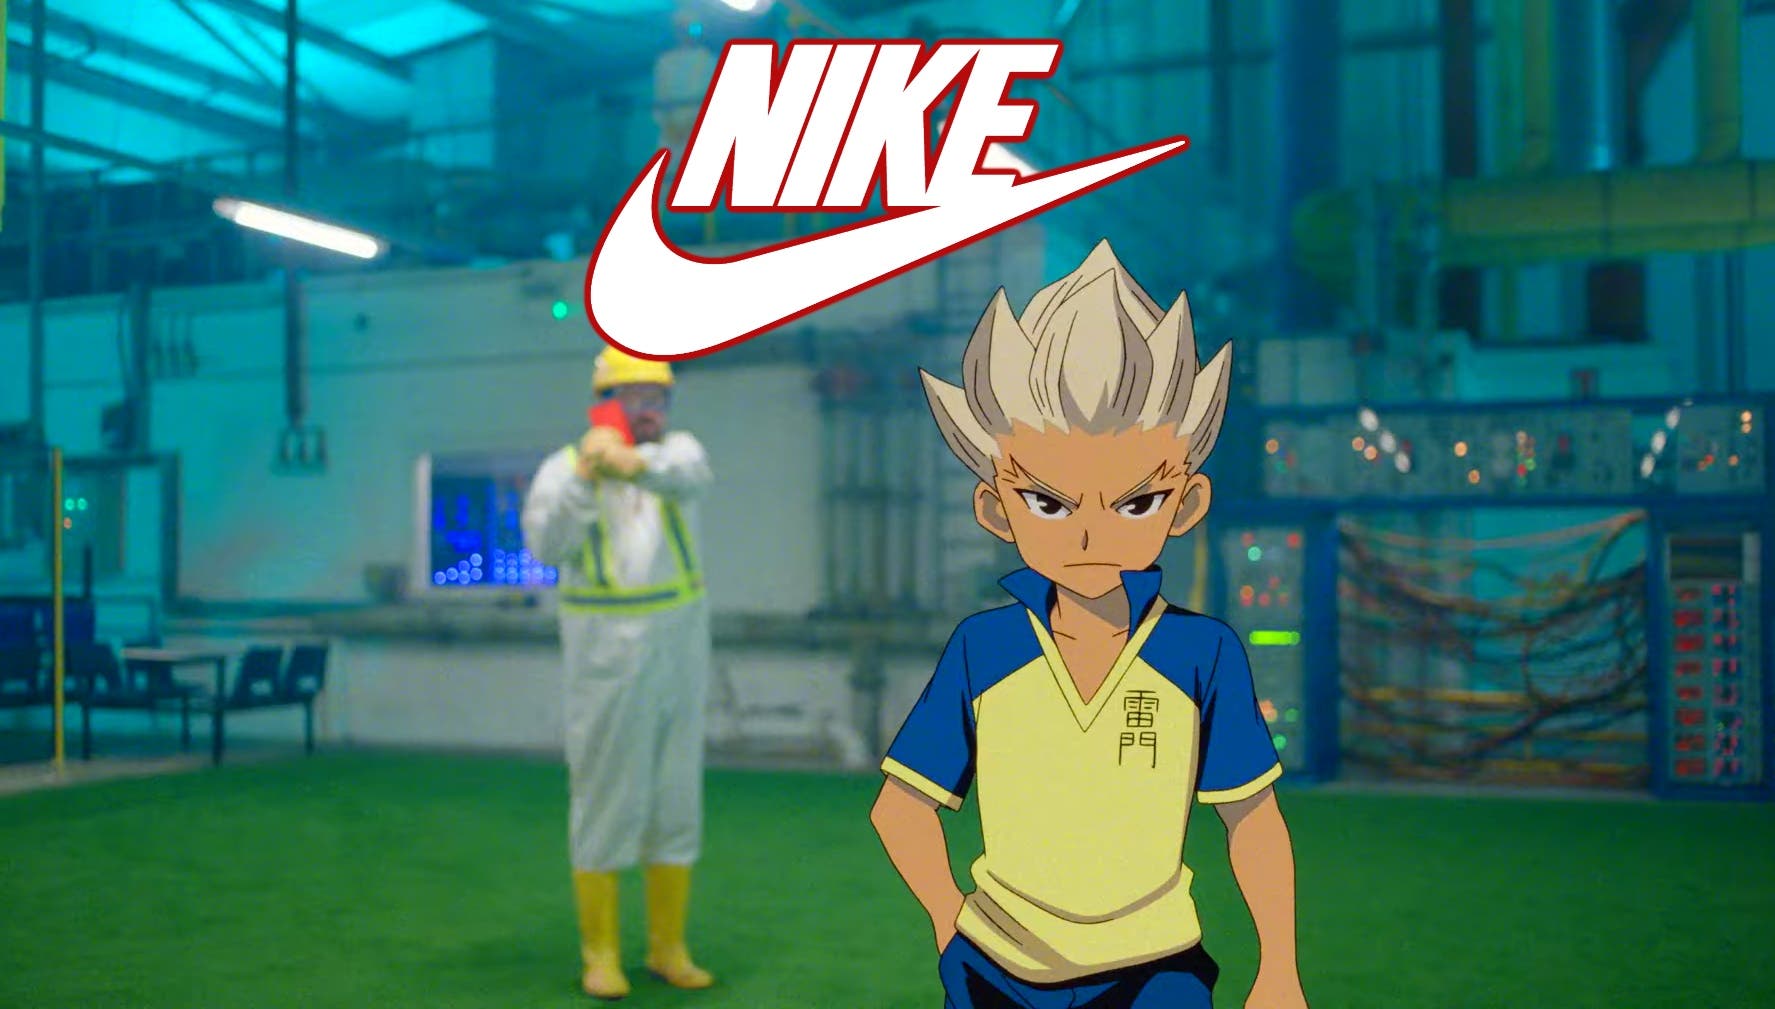 Inazuma Eleven se cuela en el nuevo anuncio de Nike de cara al Mundial de  Catar 2022